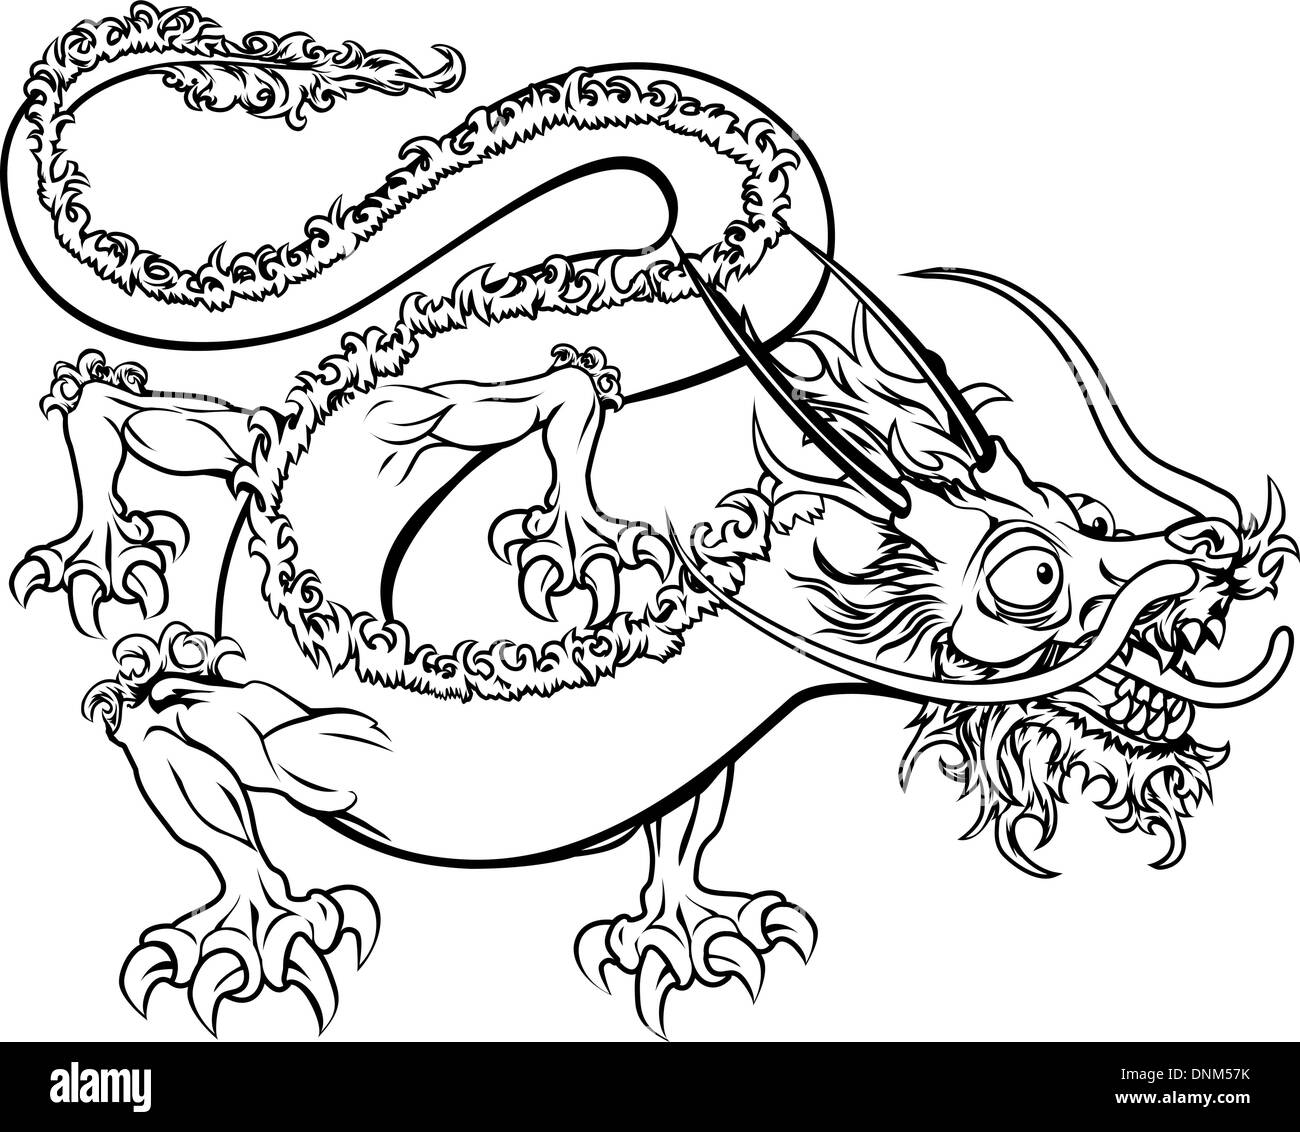 Una illustrazione di un cinese stilizzata oriental dragon forse un drago tattoo Illustrazione Vettoriale